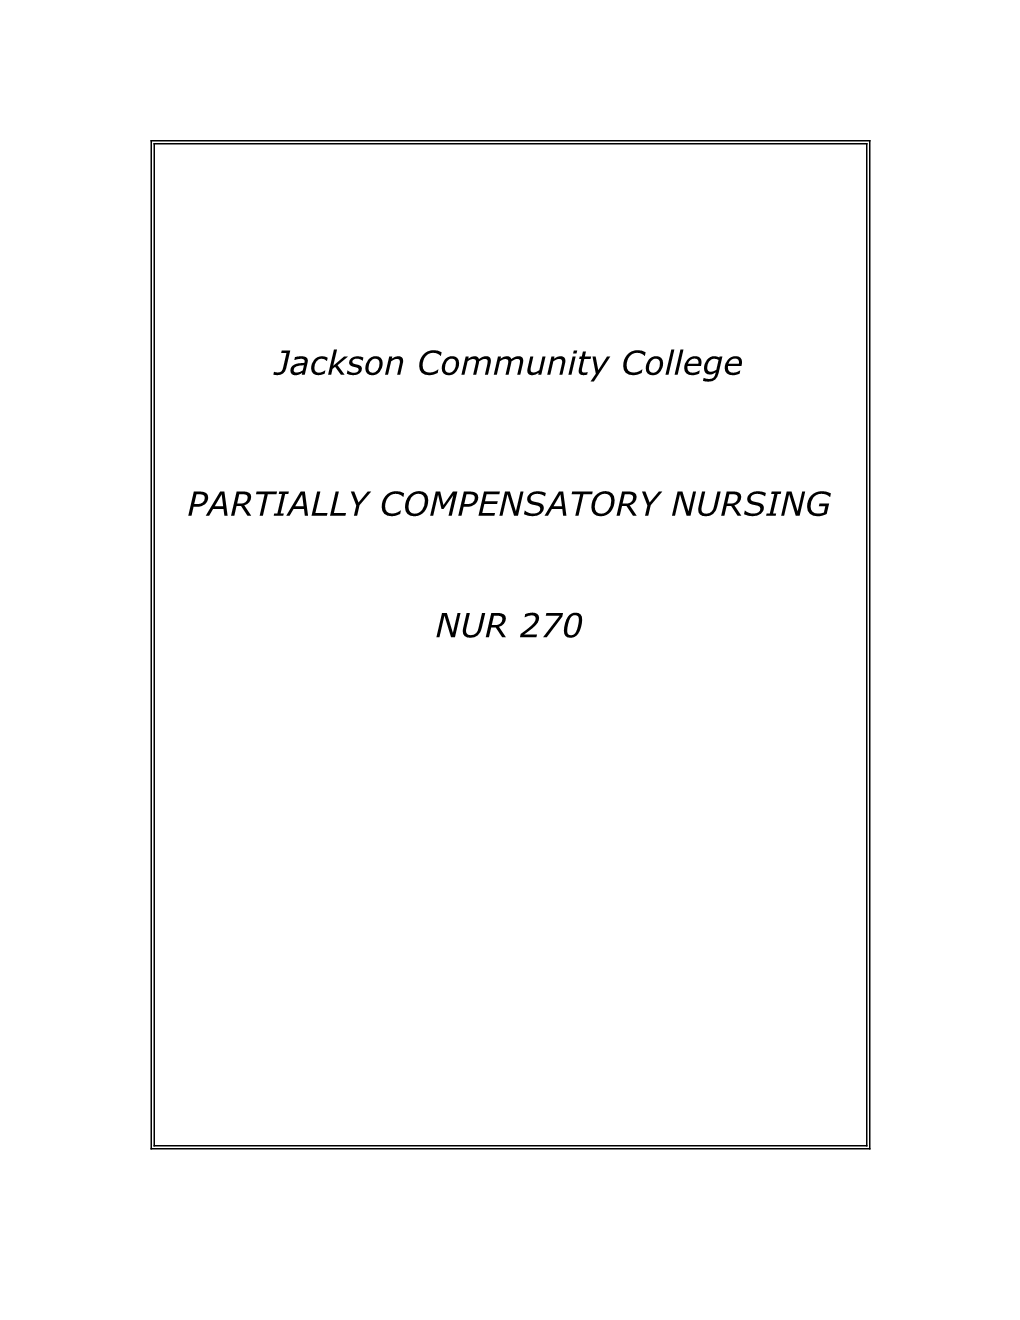 Partially Compensatory Nursing